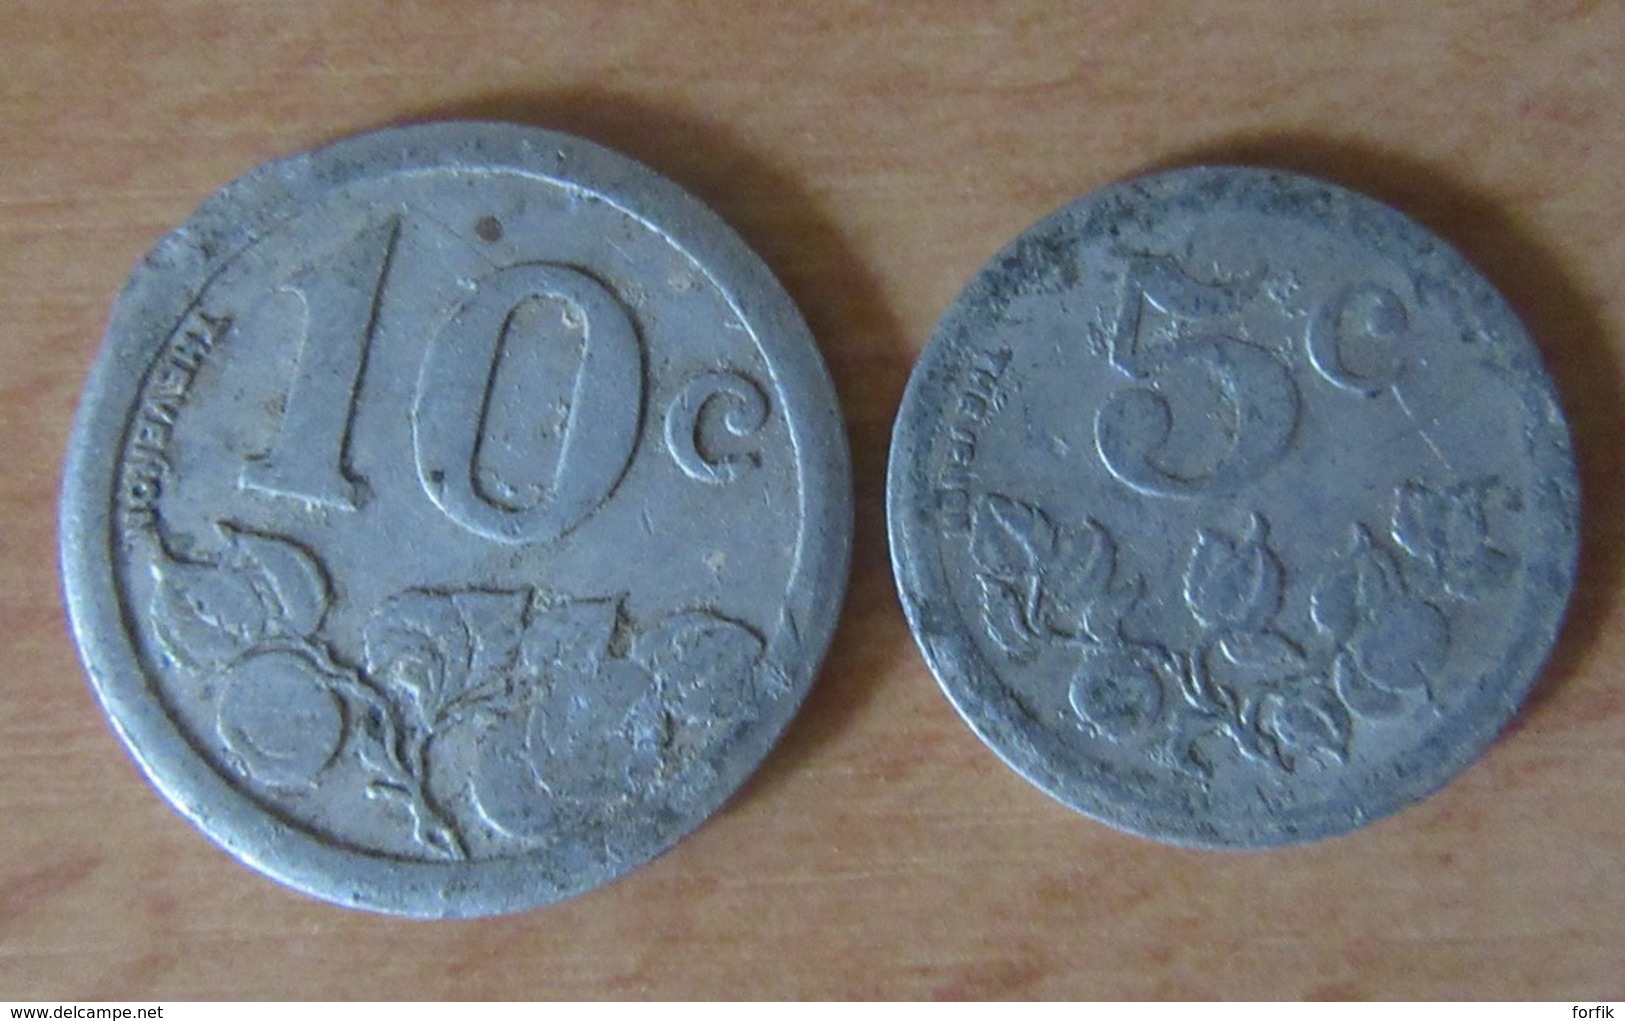 France Lot de 84 Monnaies / jetons de nécessité de villes - 1916 à 1930 - Aluminium - dont St Malo Tramway - Voir détail